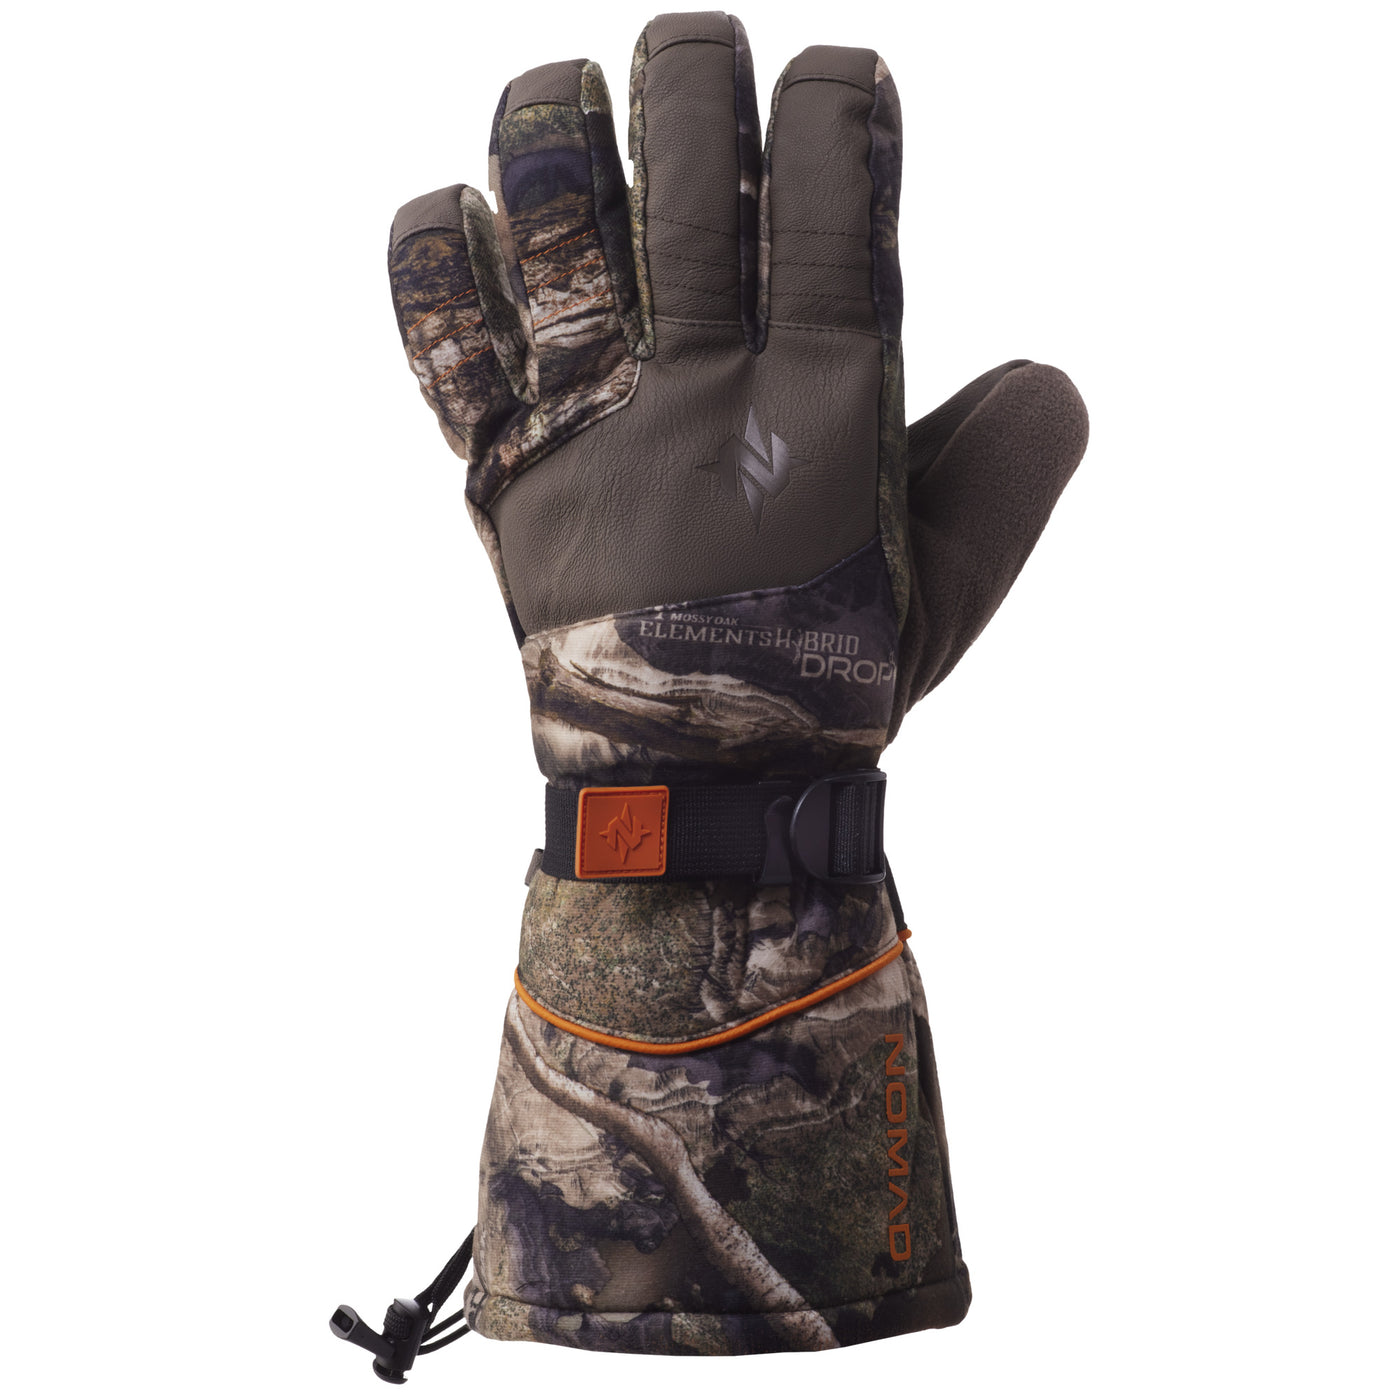 Nomad Conifer NXT Glove